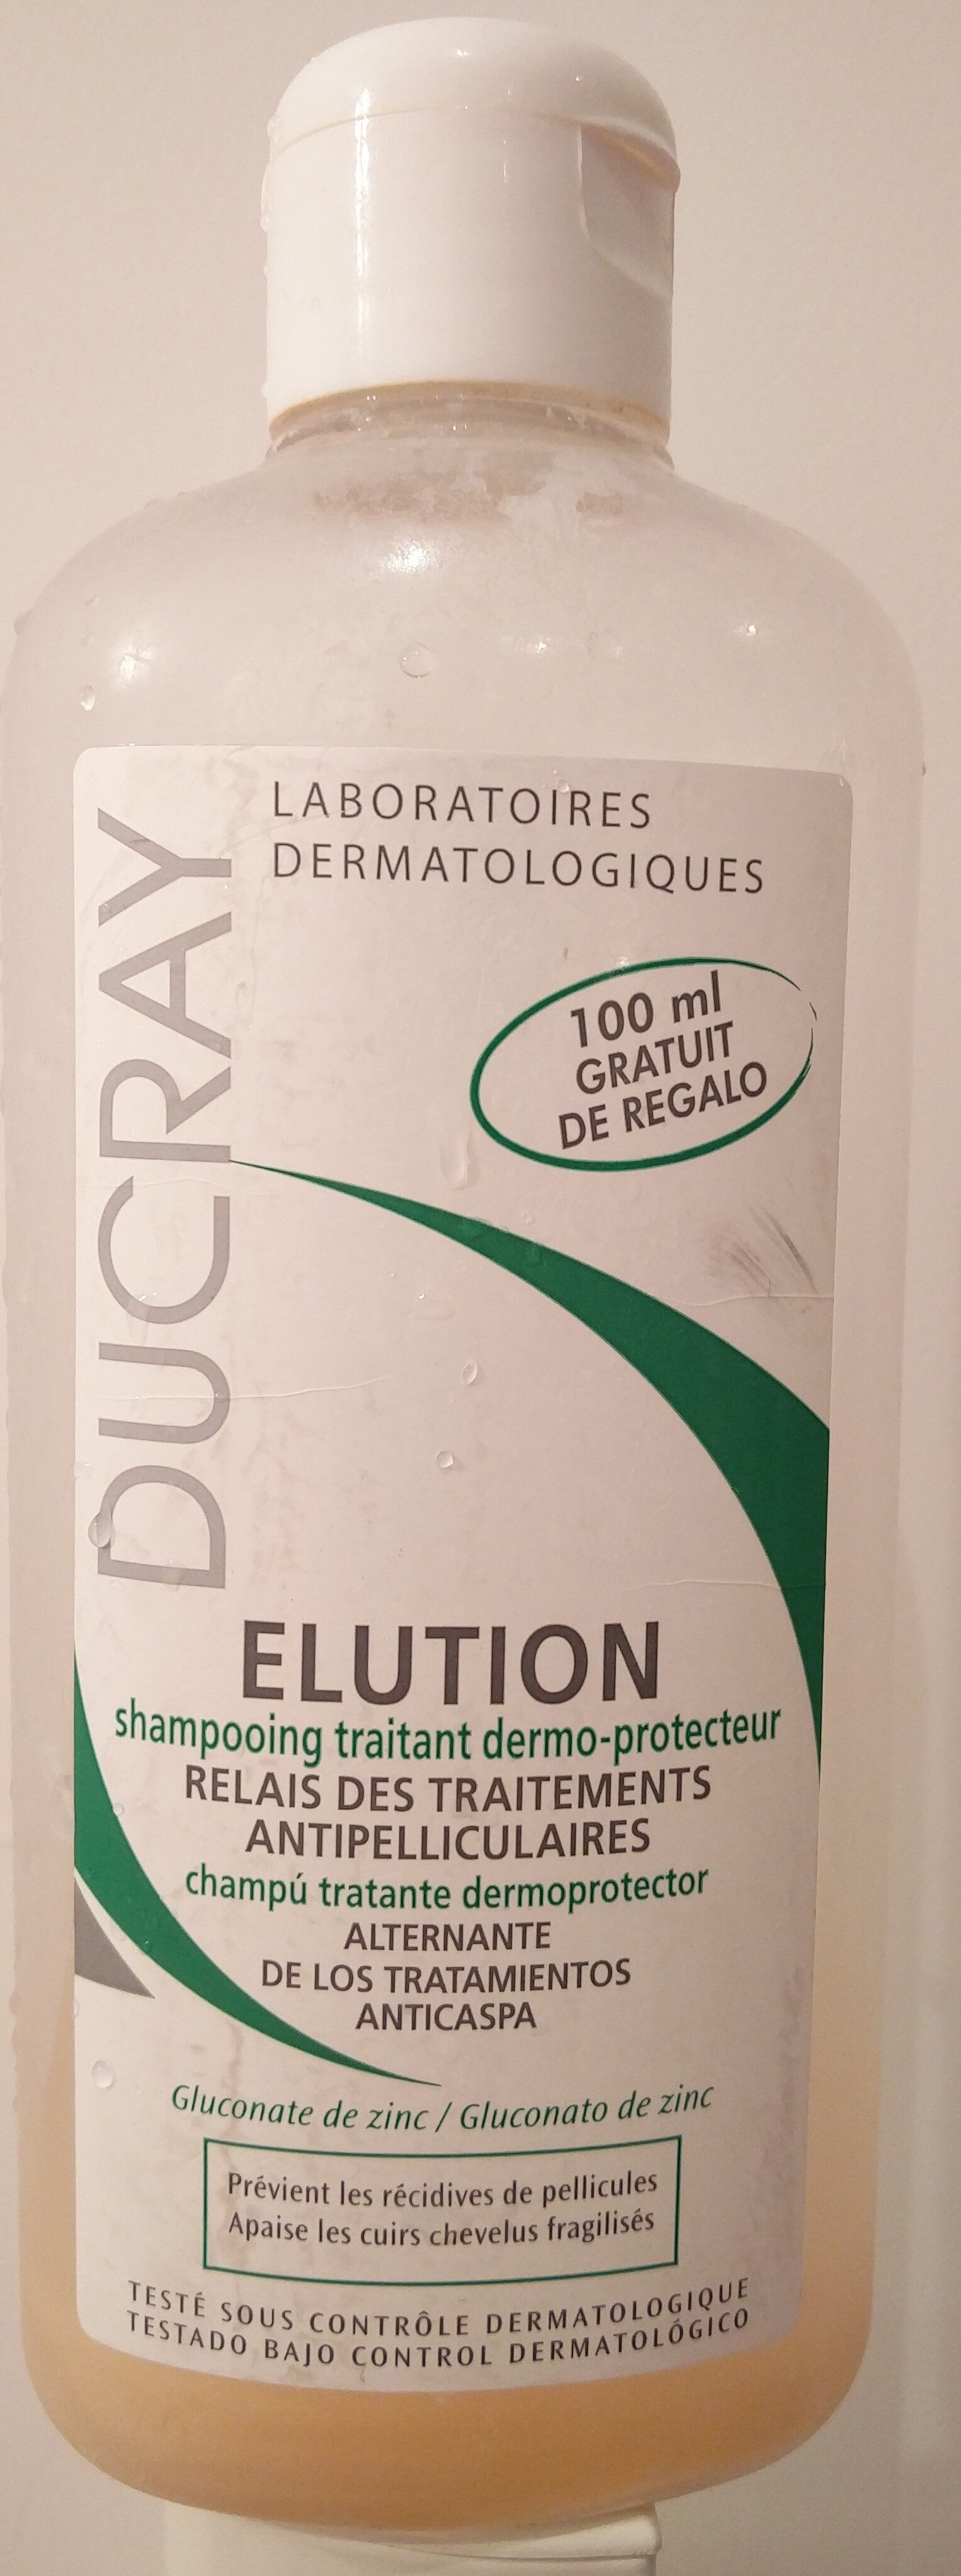 Elution - shampooing traitant dermo-protecteur - Product - en